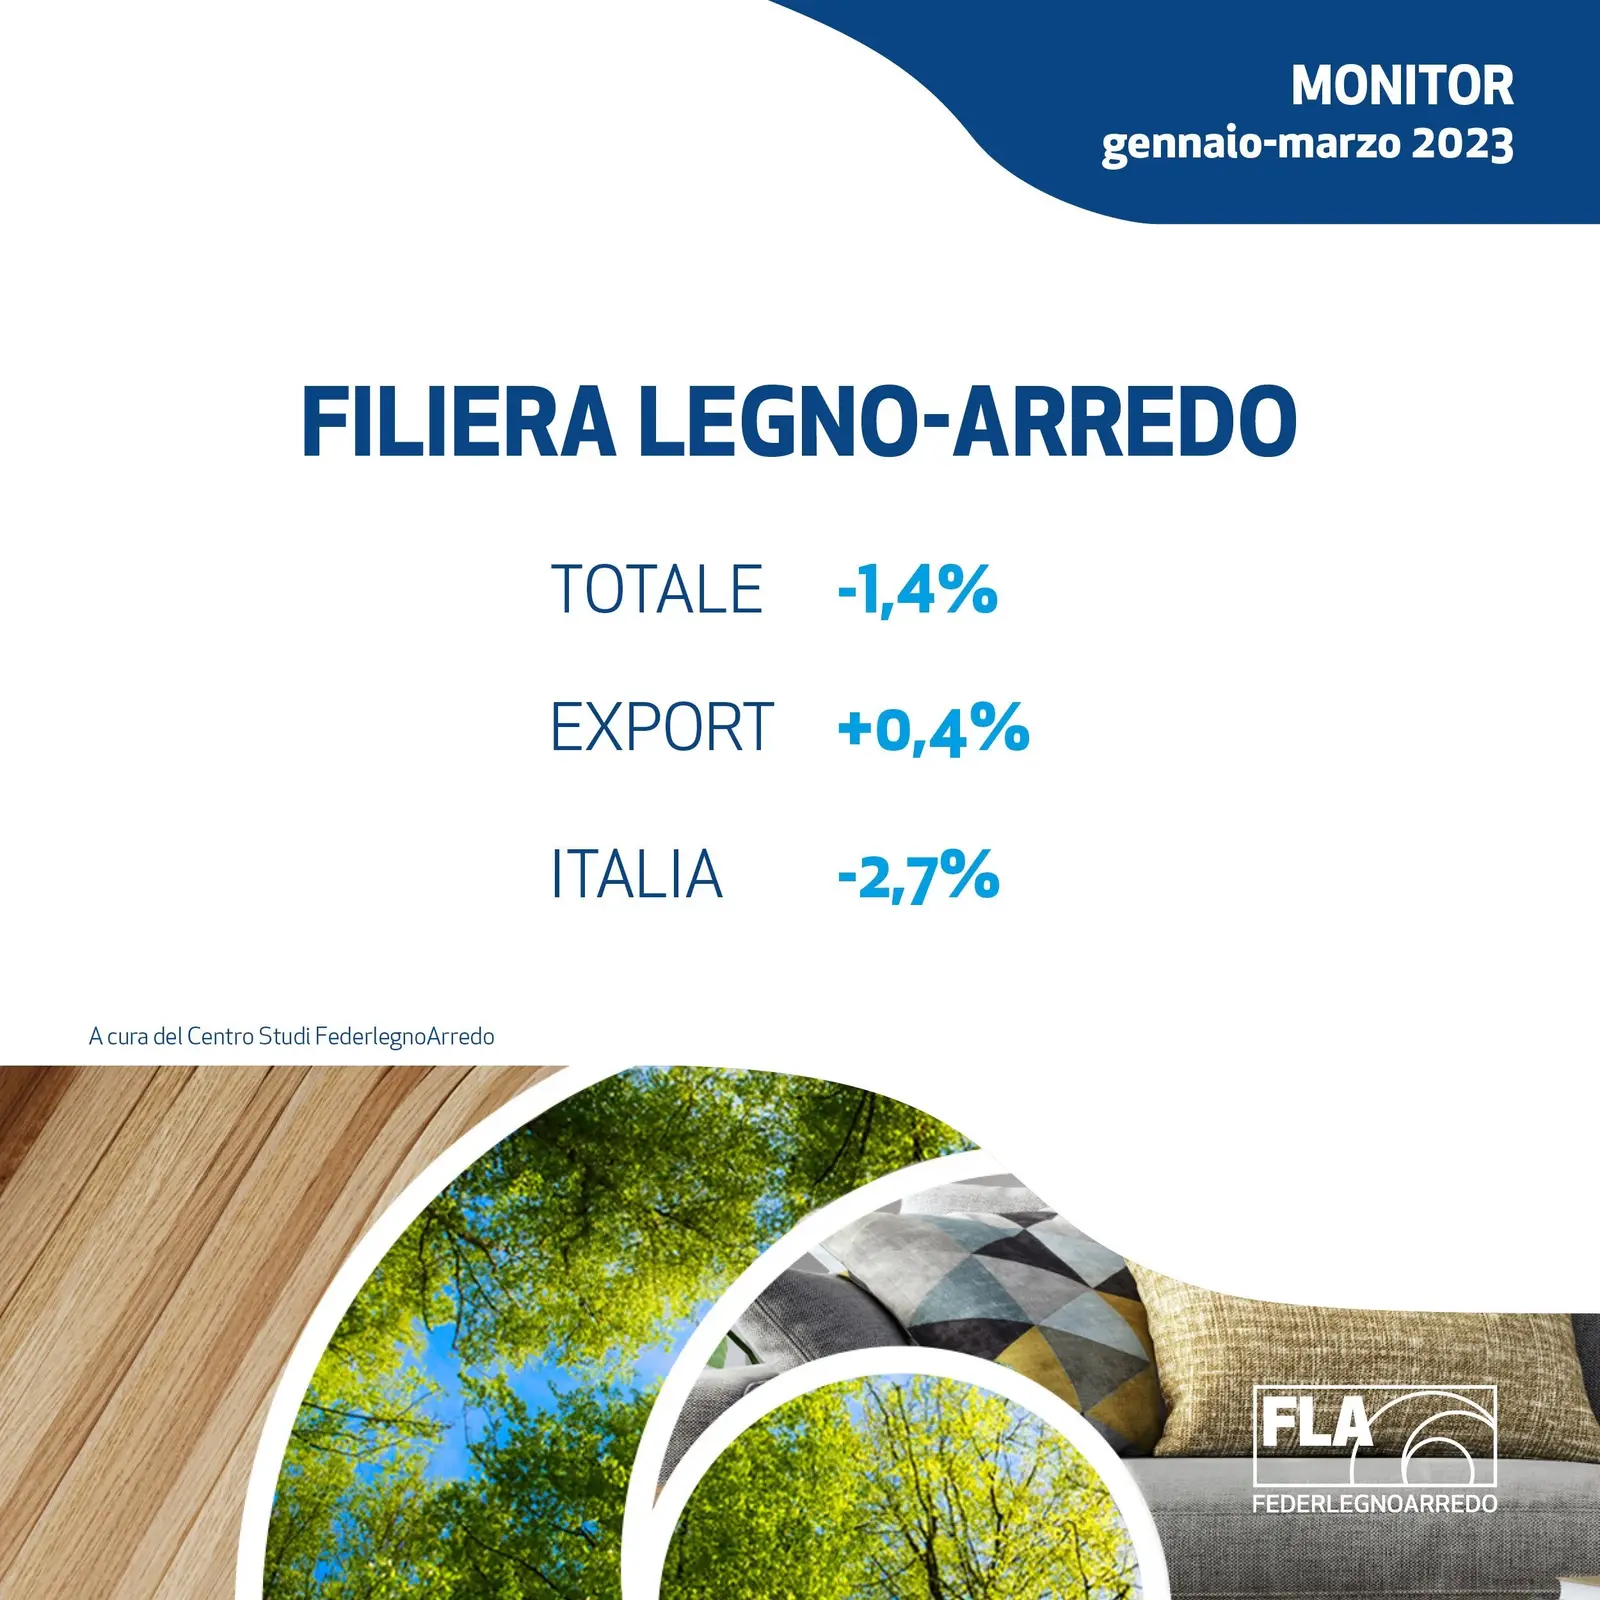 FederlegnoArredo prevê para 2023 um fecho de -3,3% para a cadeia de fornecimento de madeira-móvel